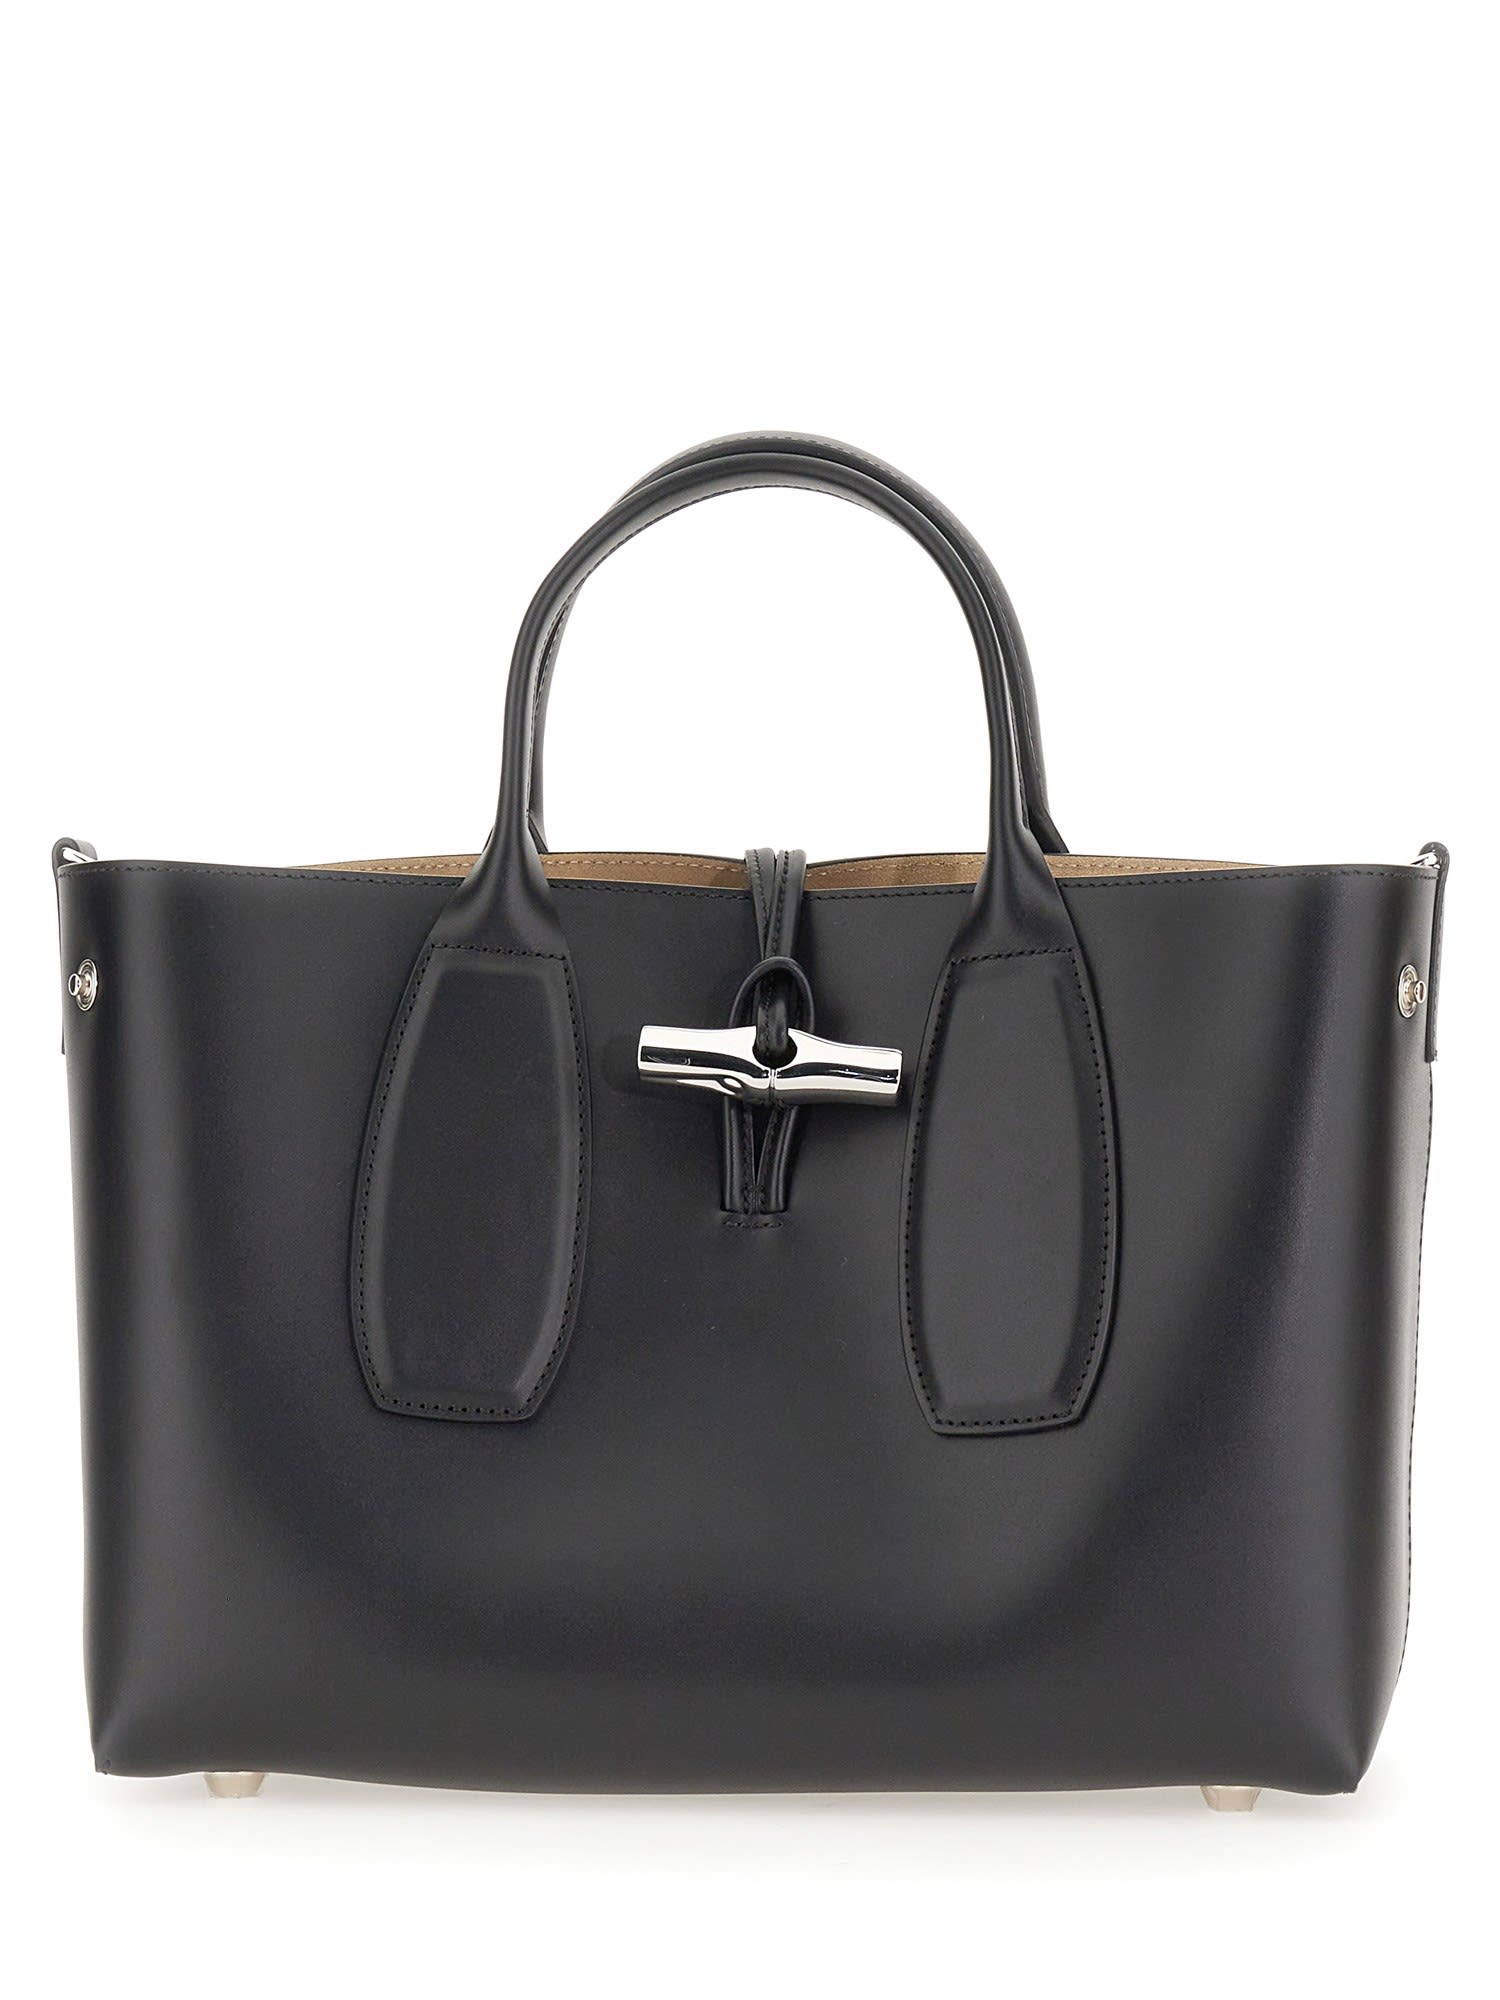 Longchamp Medium Roseau Bag